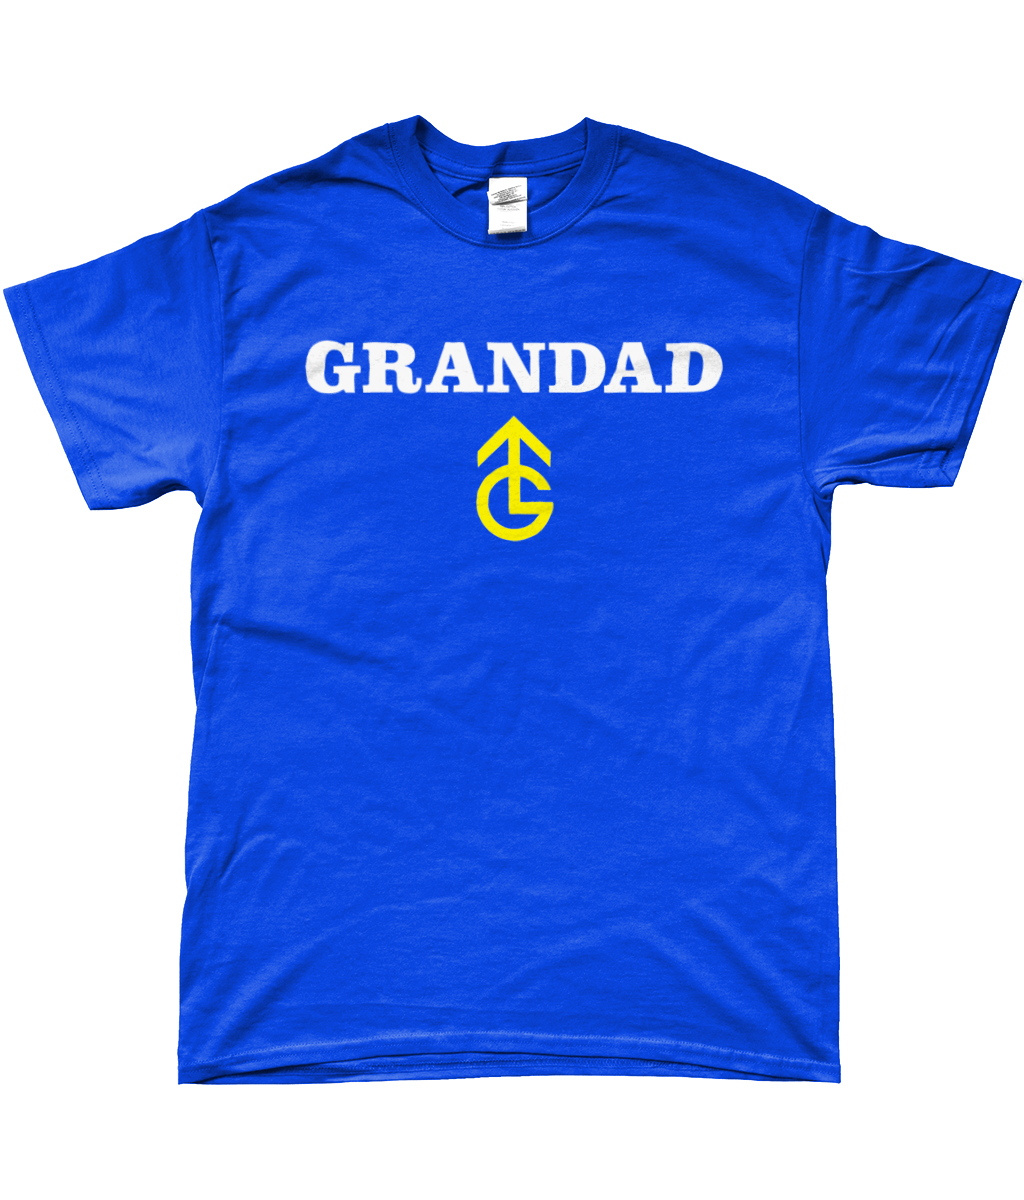 GRANDAD - No text